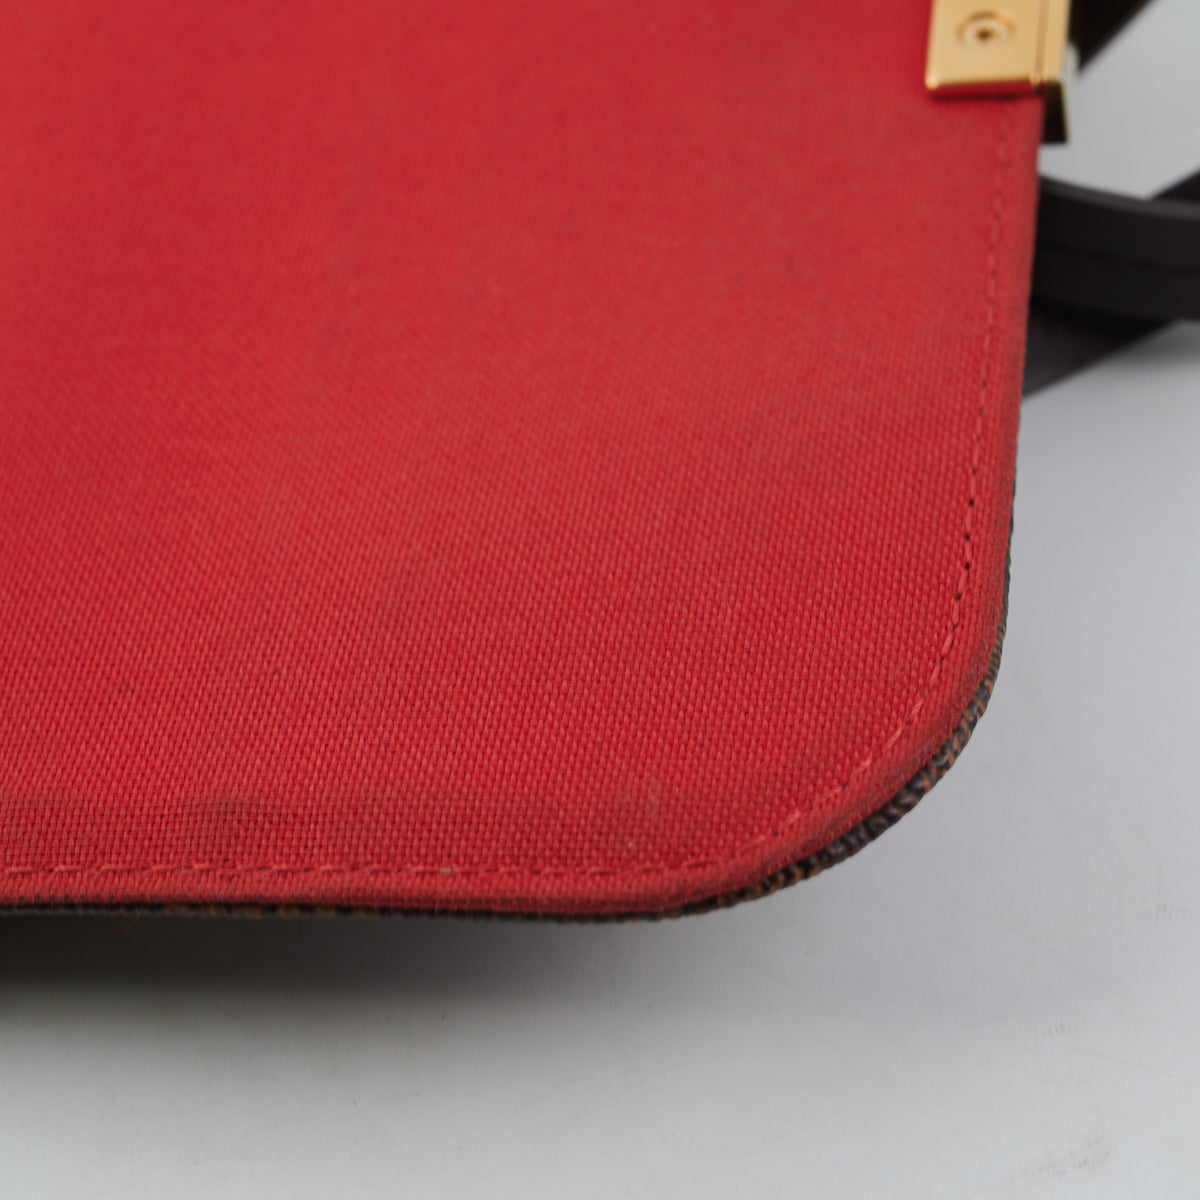 Louis Vuitton N41129 Damier Favourite MM Shoulder bag (DU0165) - NEW